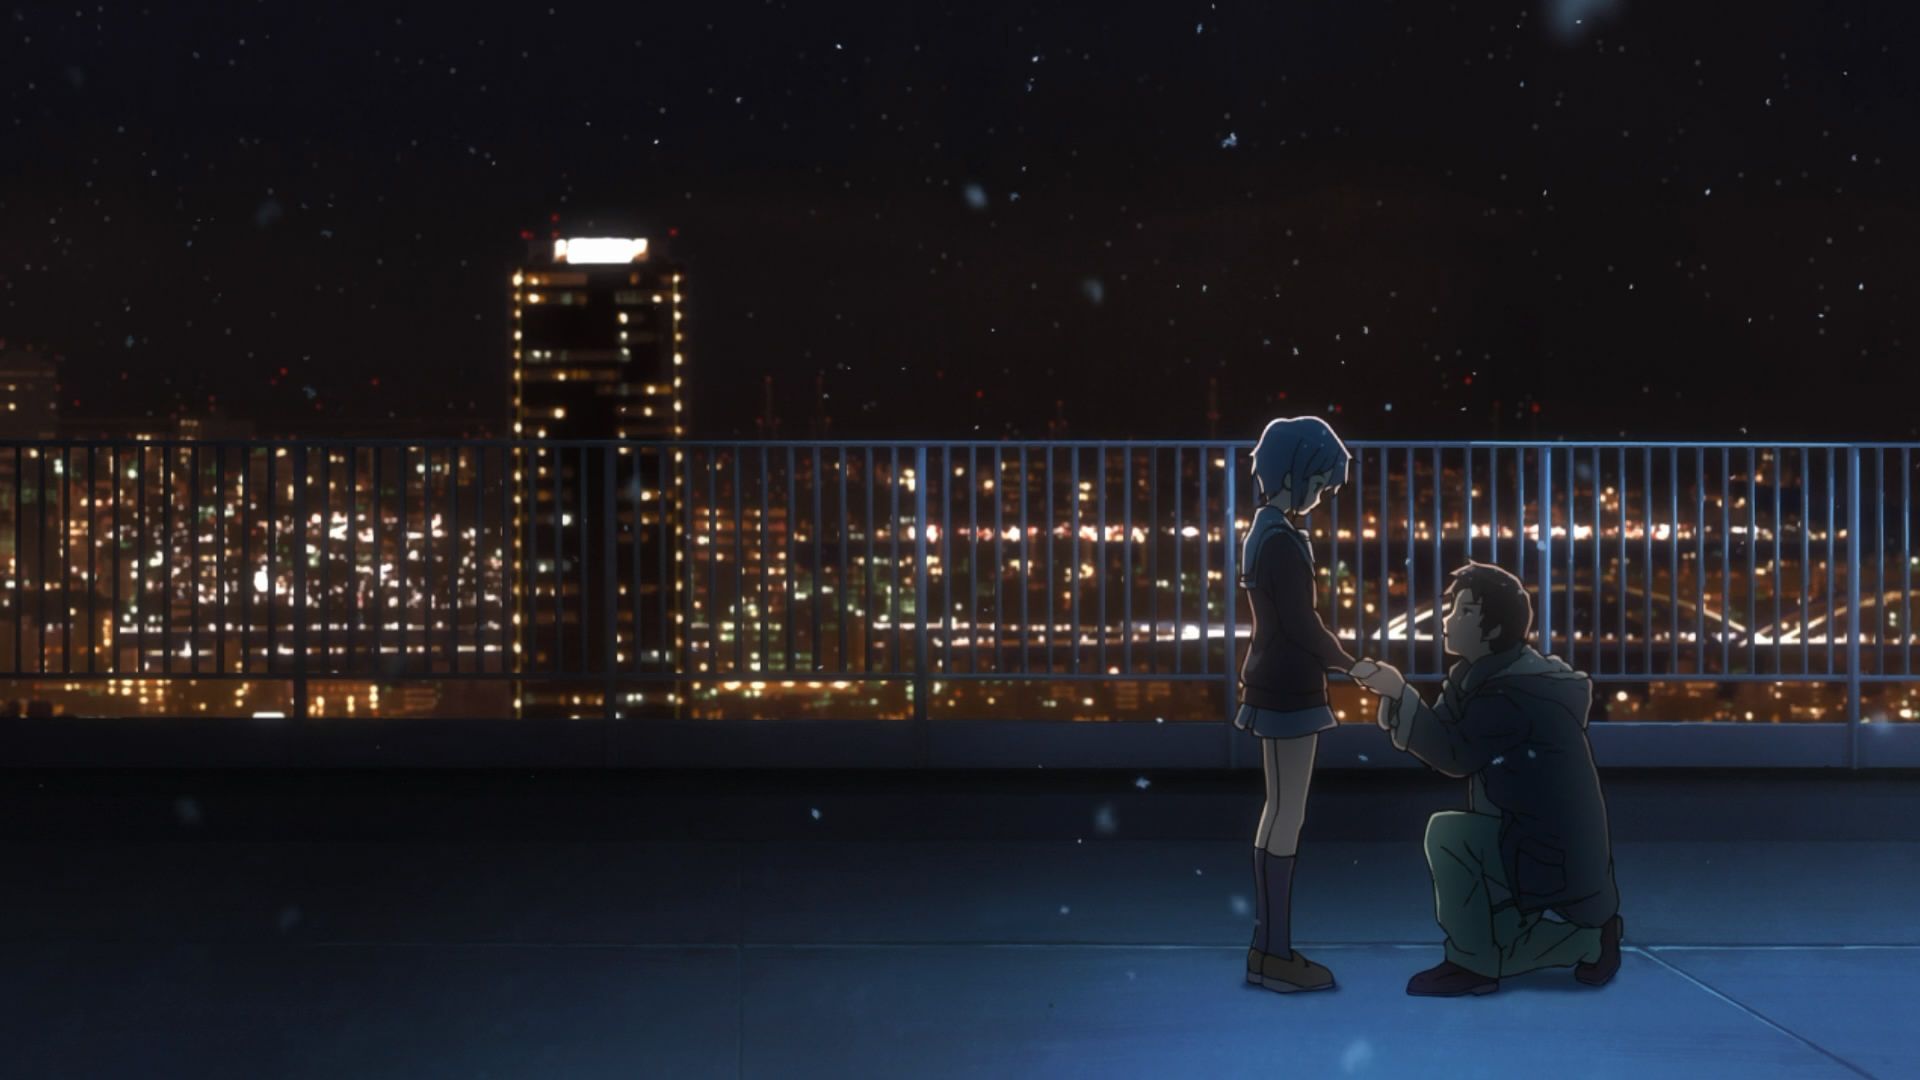 Anime Girl on Roof - NeatoShop